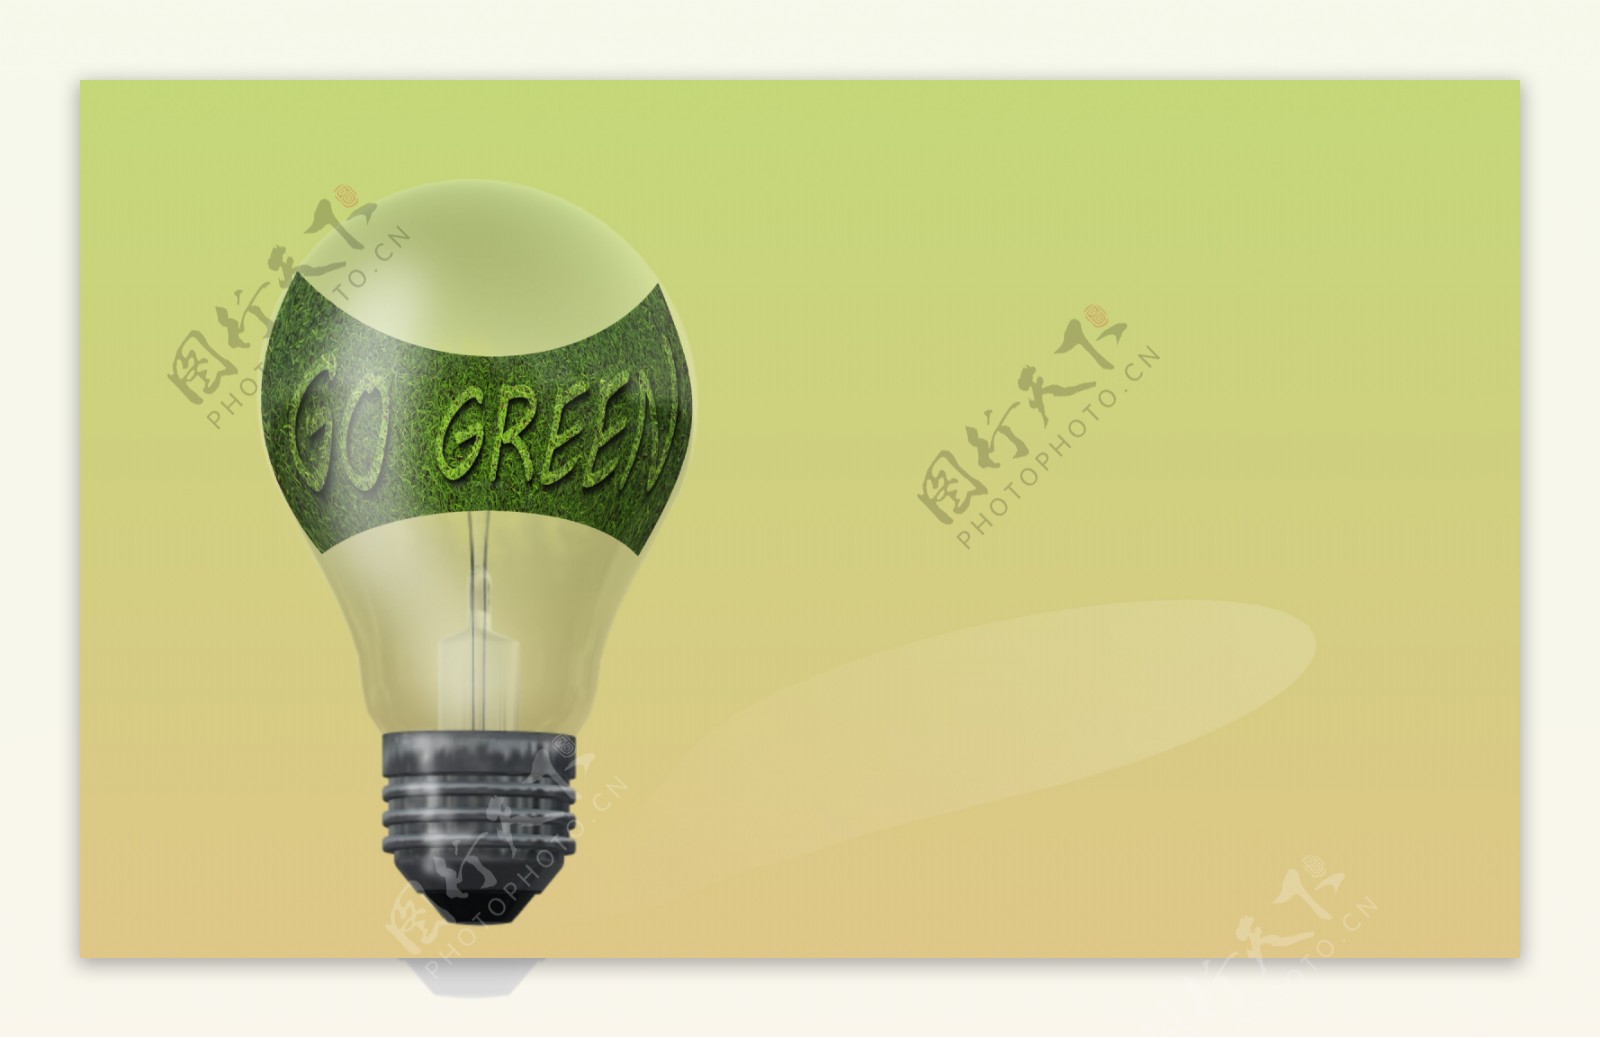 文本的灯泡使用绿色食品